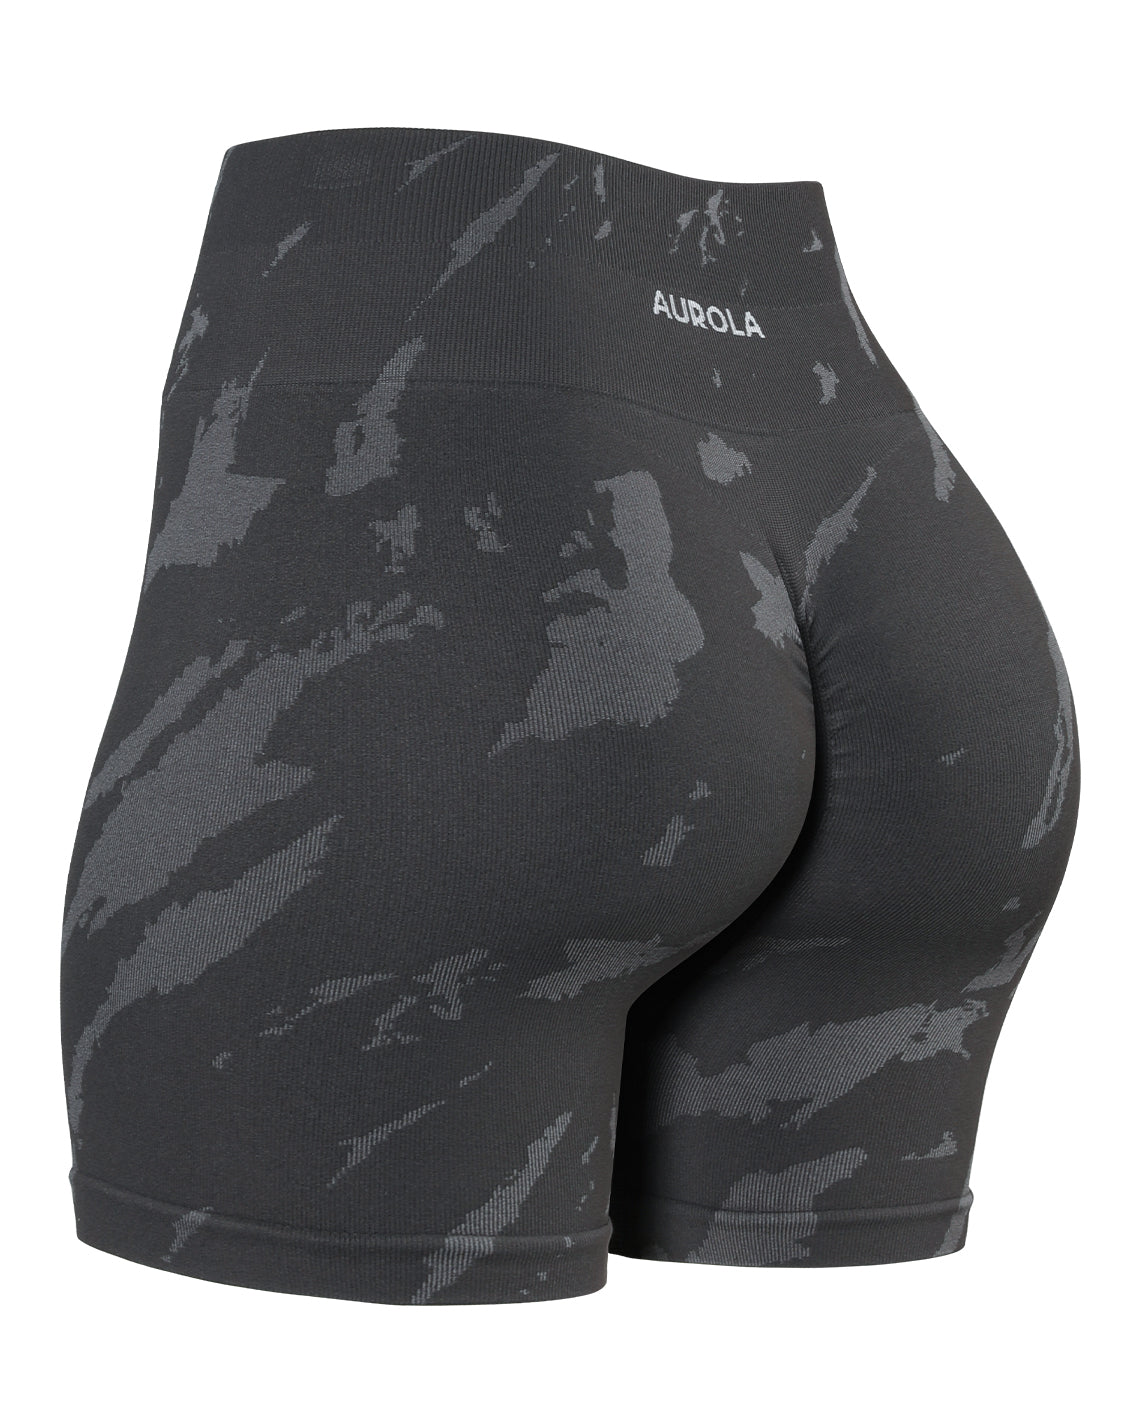 aurola shorts sarahh_89 - Gem